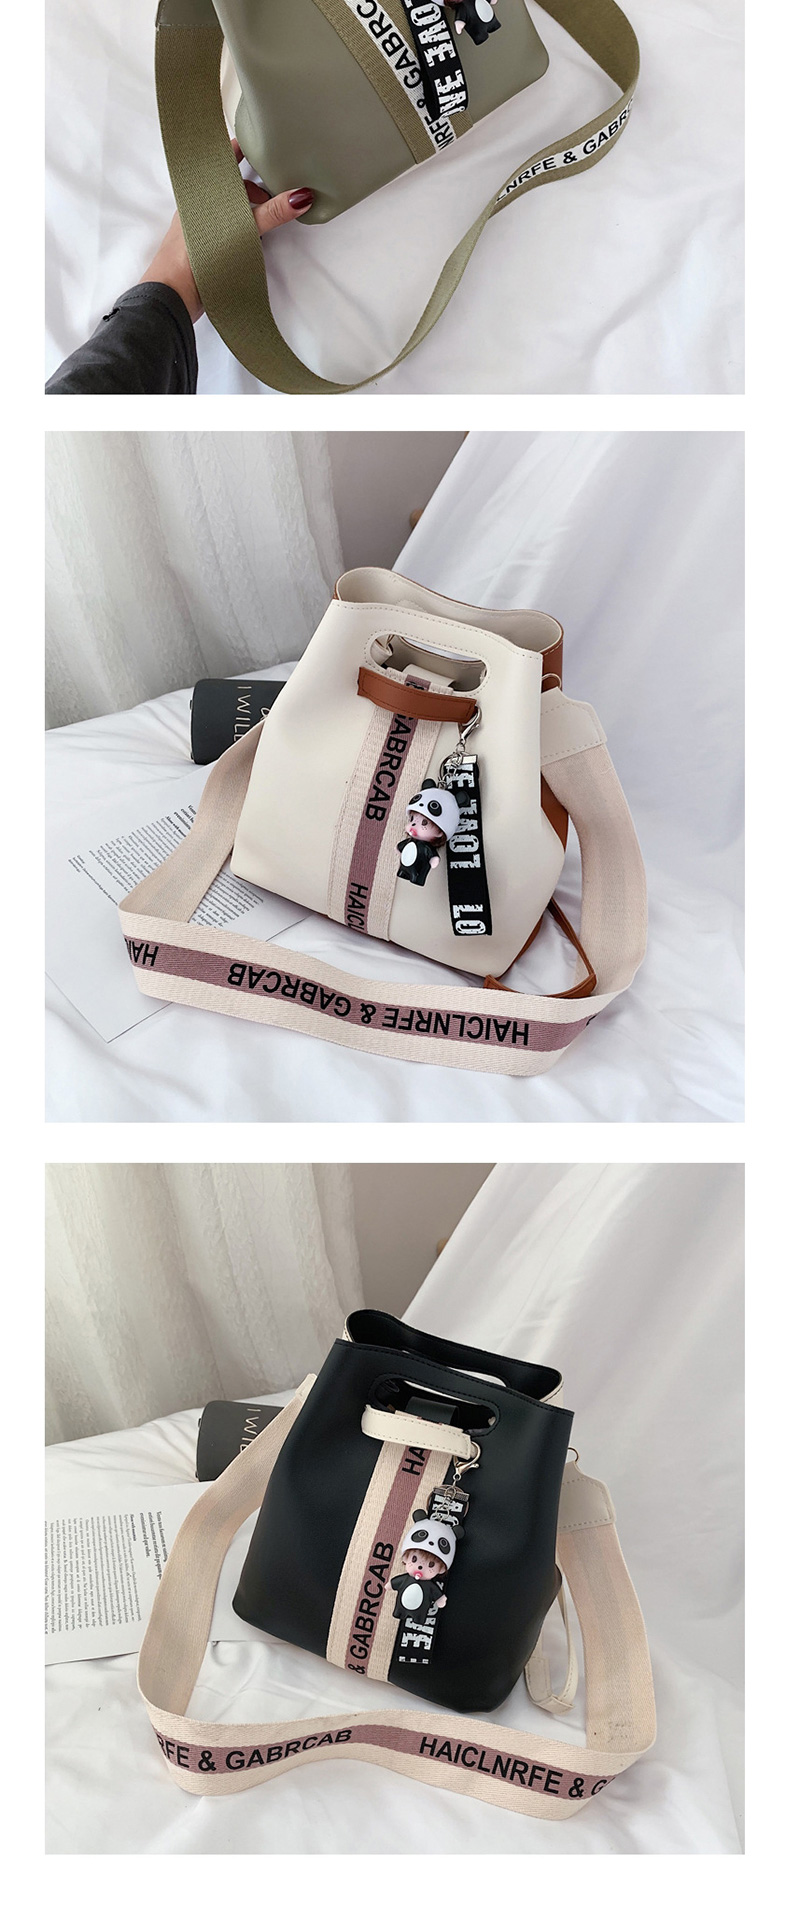 Fashion Black Broadband Contrast Shoulder Crossbody Bag,Shoulder bags